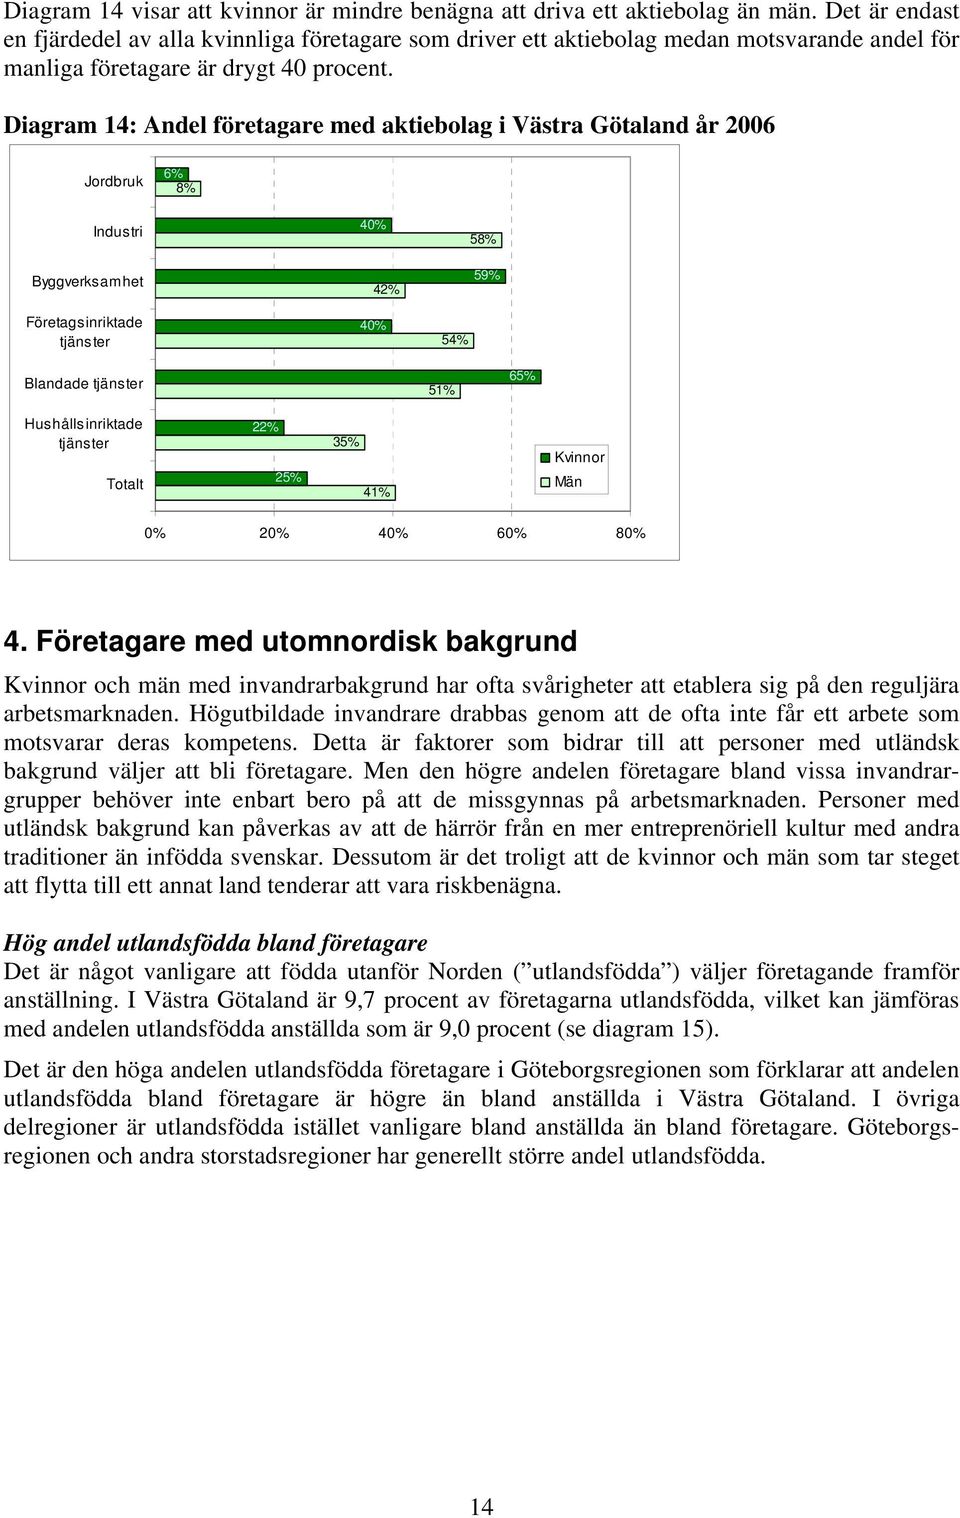 Diagram 14: Andel företagare med aktiebolag i Västra Götaland år 2006 Jordbruk 6% 8% Industri Byggverksamhet 40% 42% 58% 59% Företagsinriktade 40% 54% Blandade 51% 65% Hushållsinriktade Totalt 22%